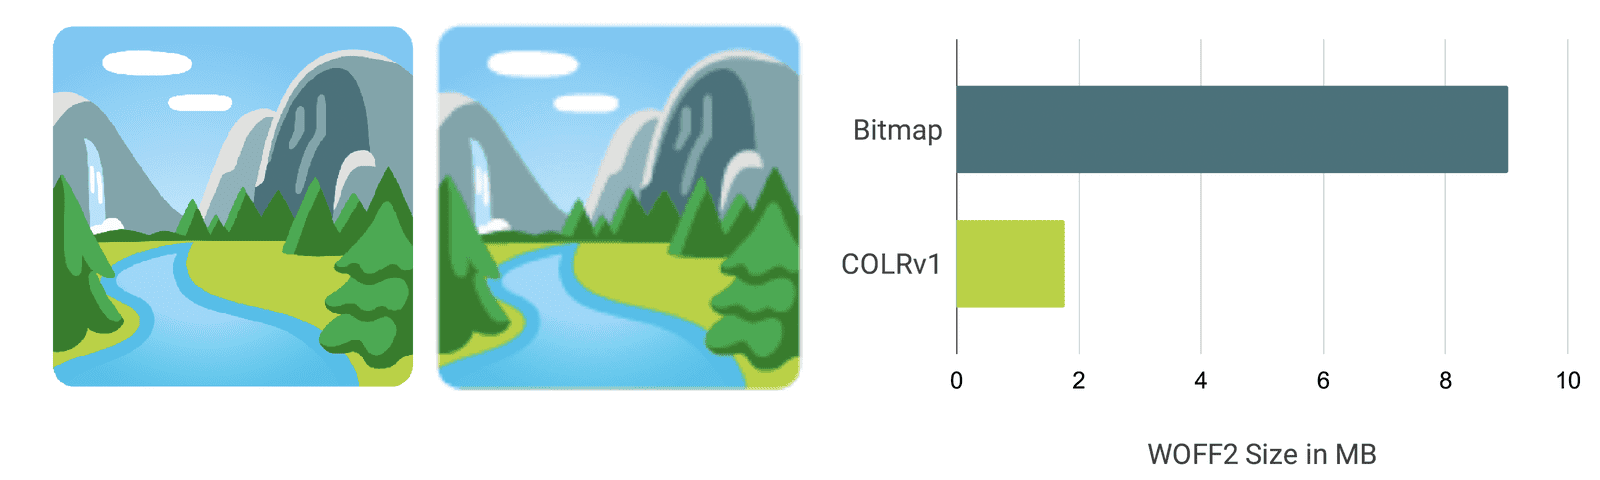 तुलना विज़ुअलाइज़ेशन और बार चार्ट, जिसमें दिखाया गया है कि COLRv1 फ़ॉन्ट ज़्यादा साफ़ और छोटे कैसे हैं.